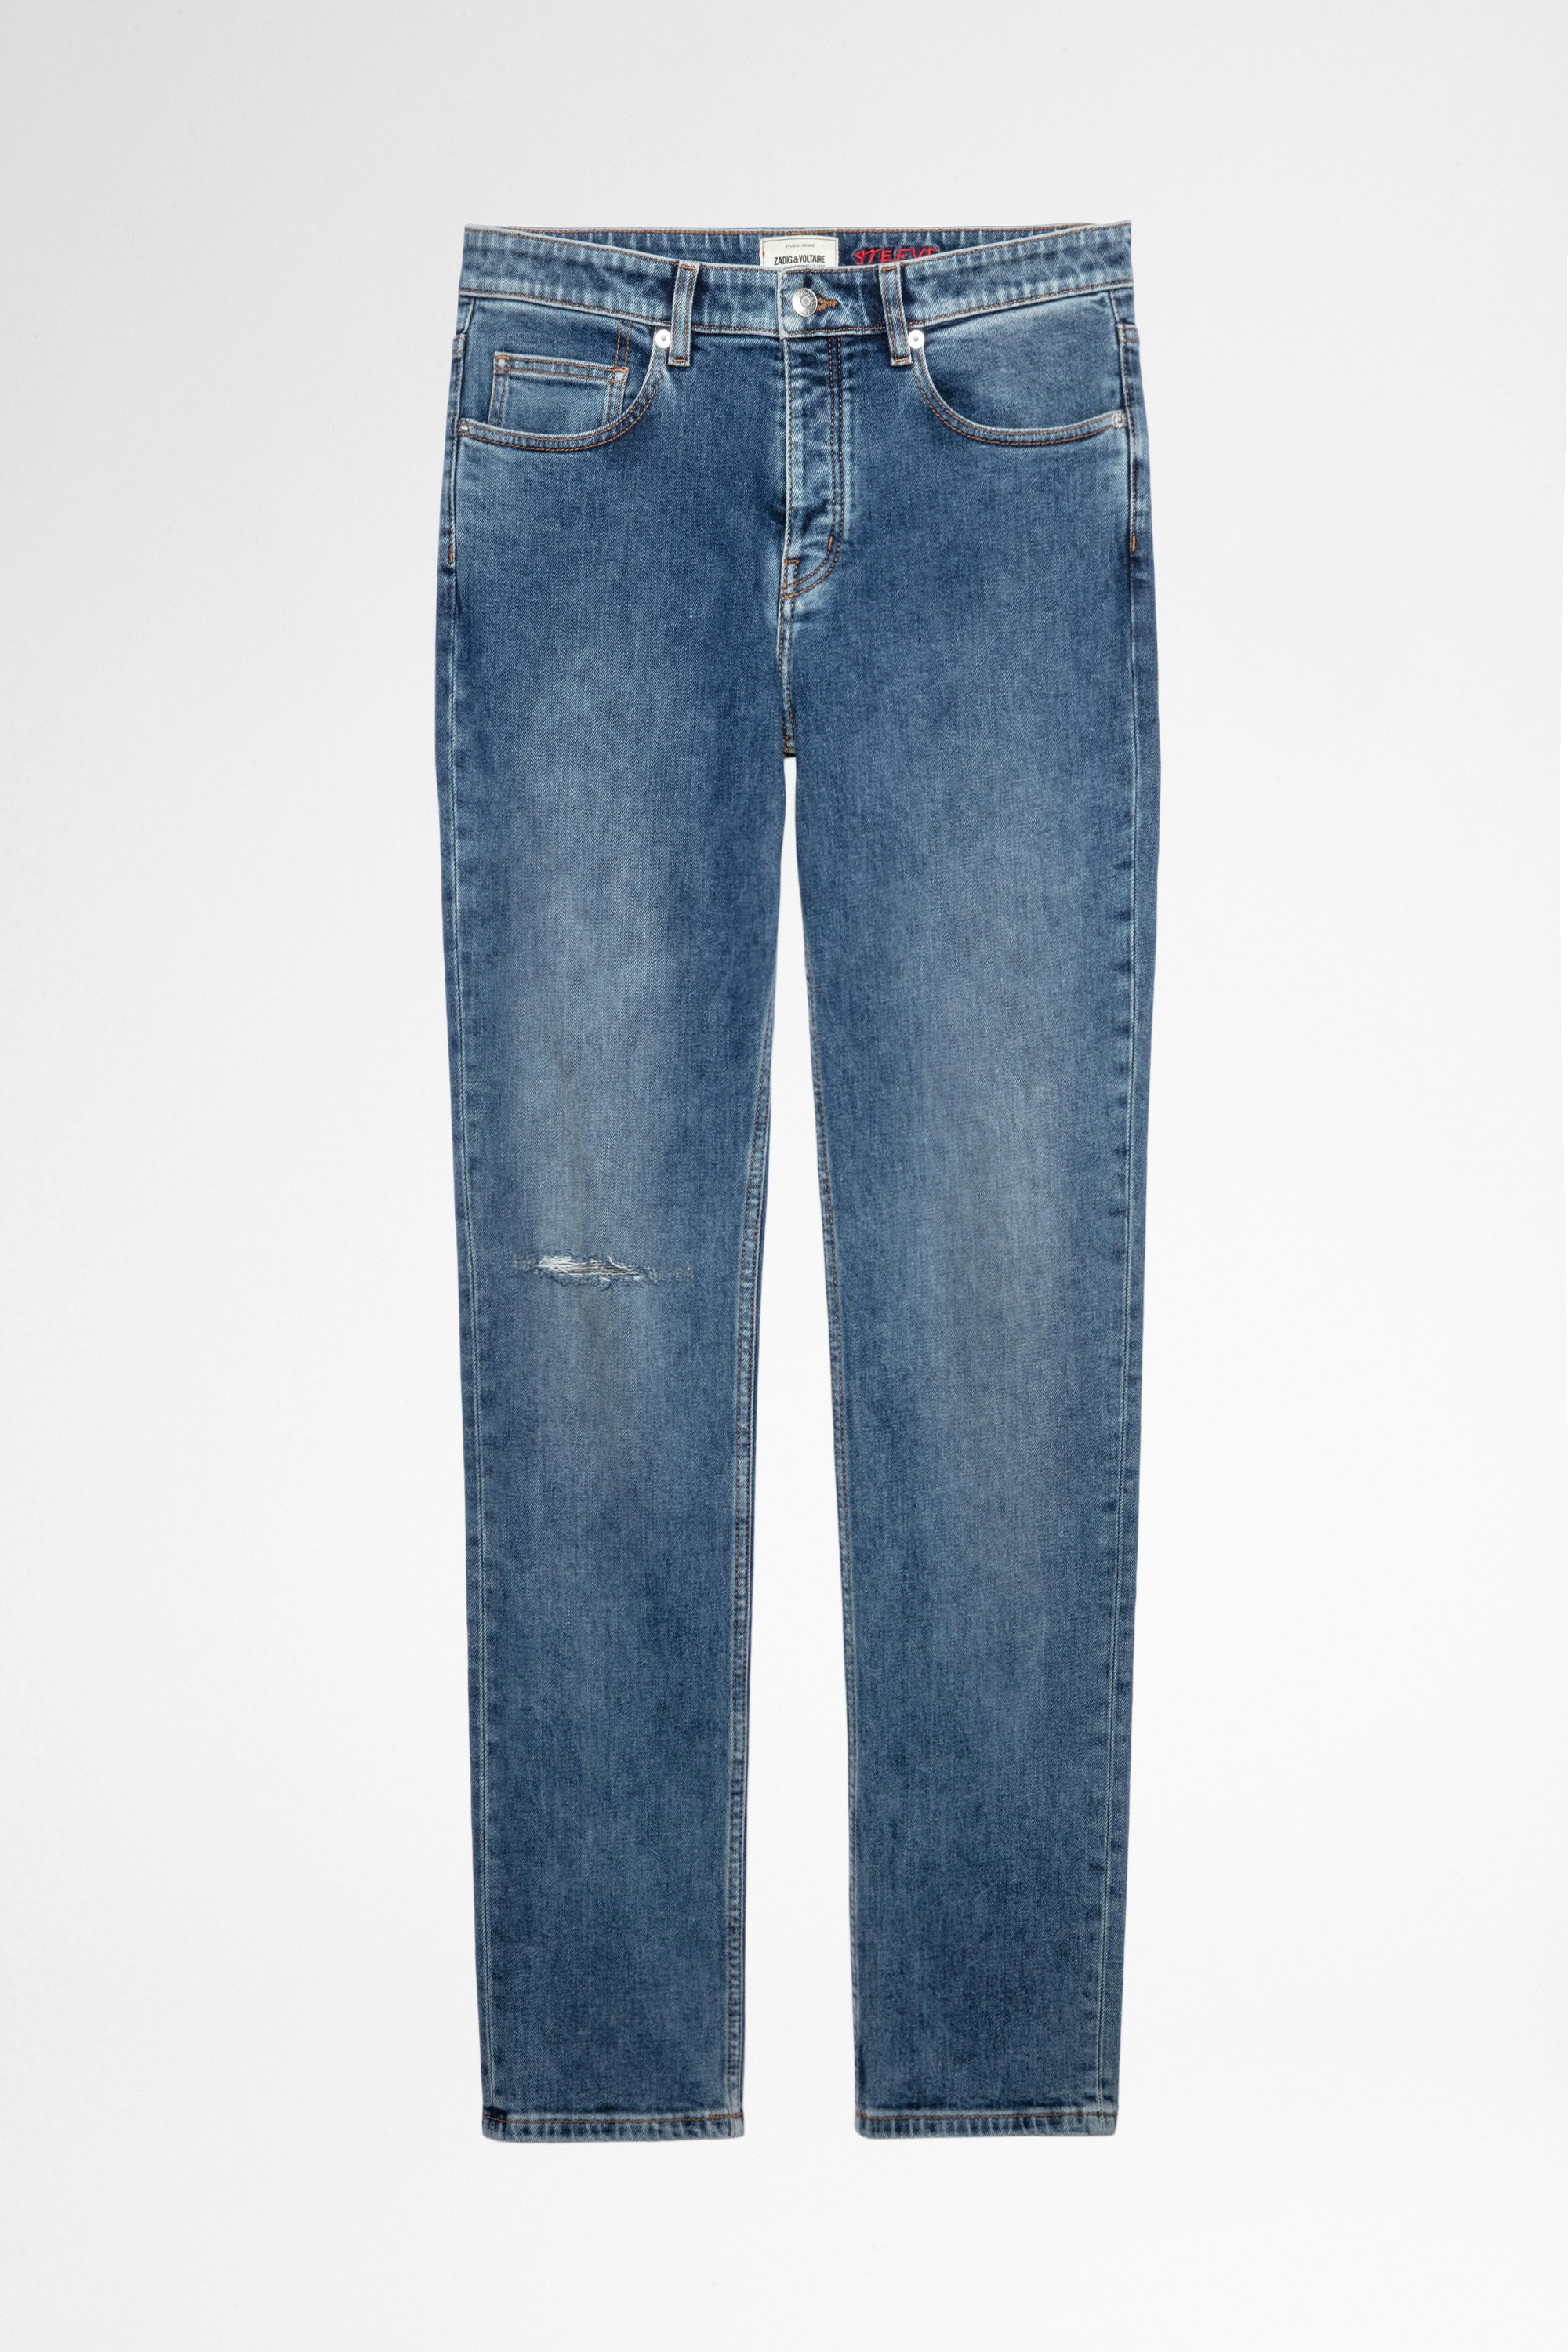 Jeans Steeve Herren-Jeans aus blauem Denim mit Cut am Knie